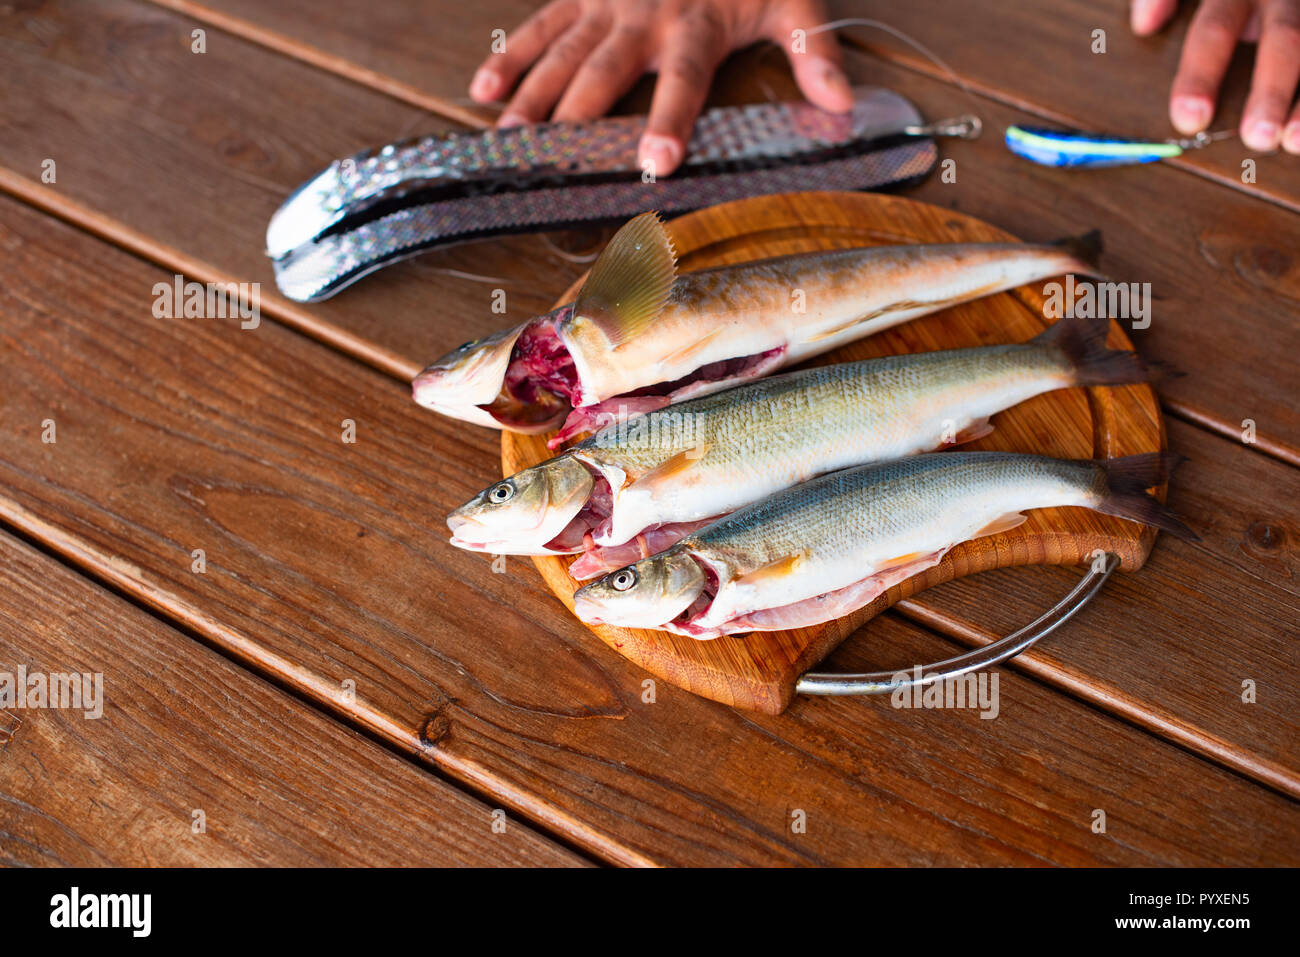 Les prises de poissons frais de la mer se trouve sur une planche à découper sur une table en bois. Top View copy space Banque D'Images